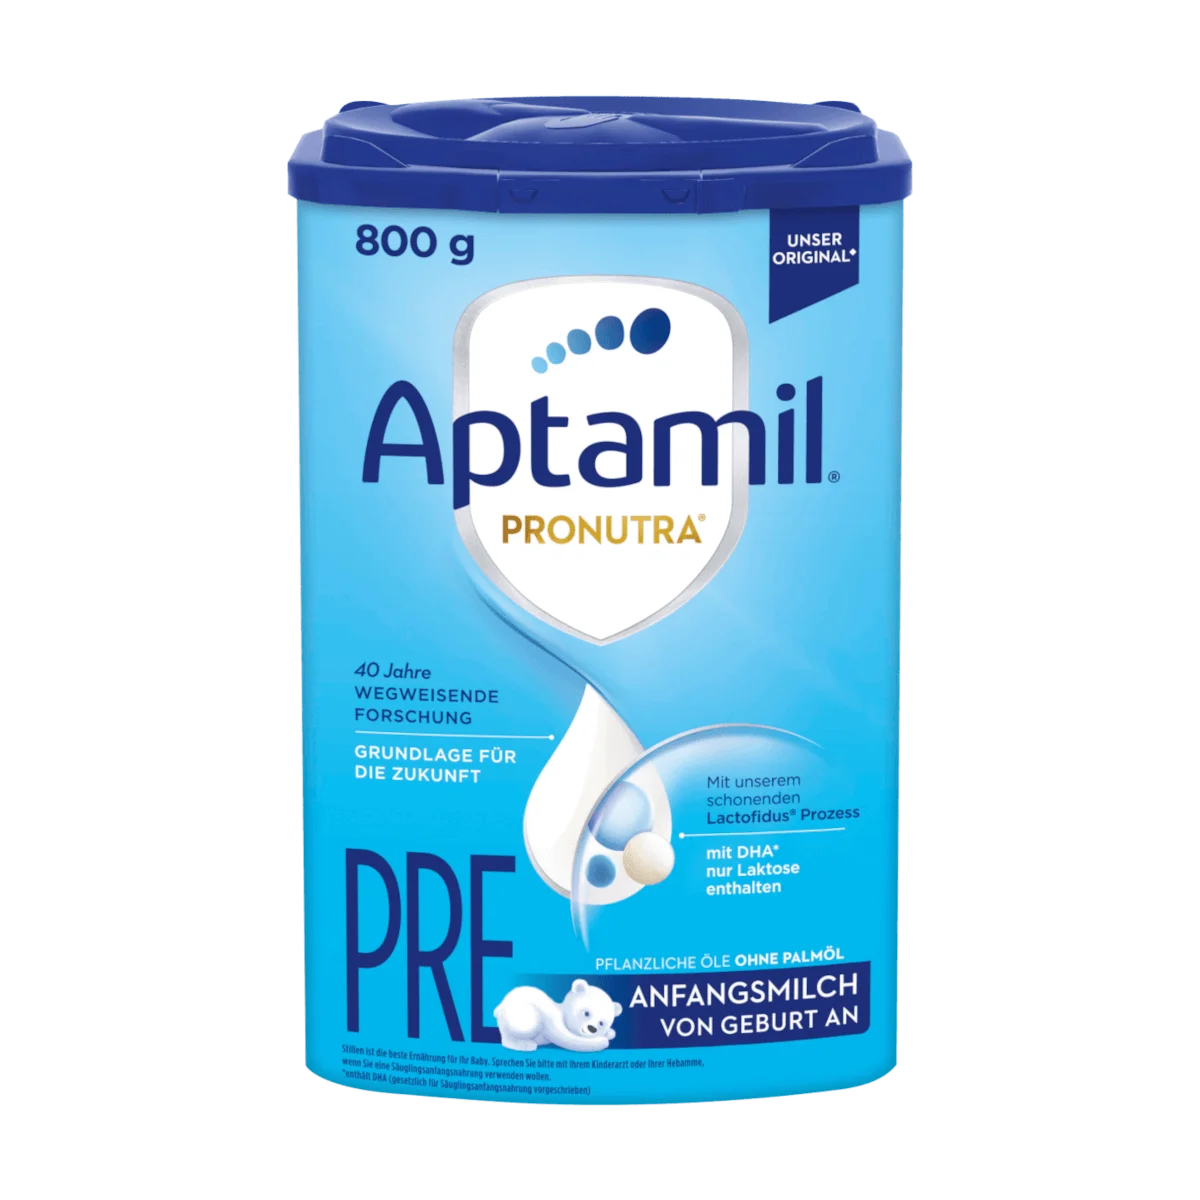 Aptamil Pronutra Pre Anfangsmilch von Geburt an, 800 g